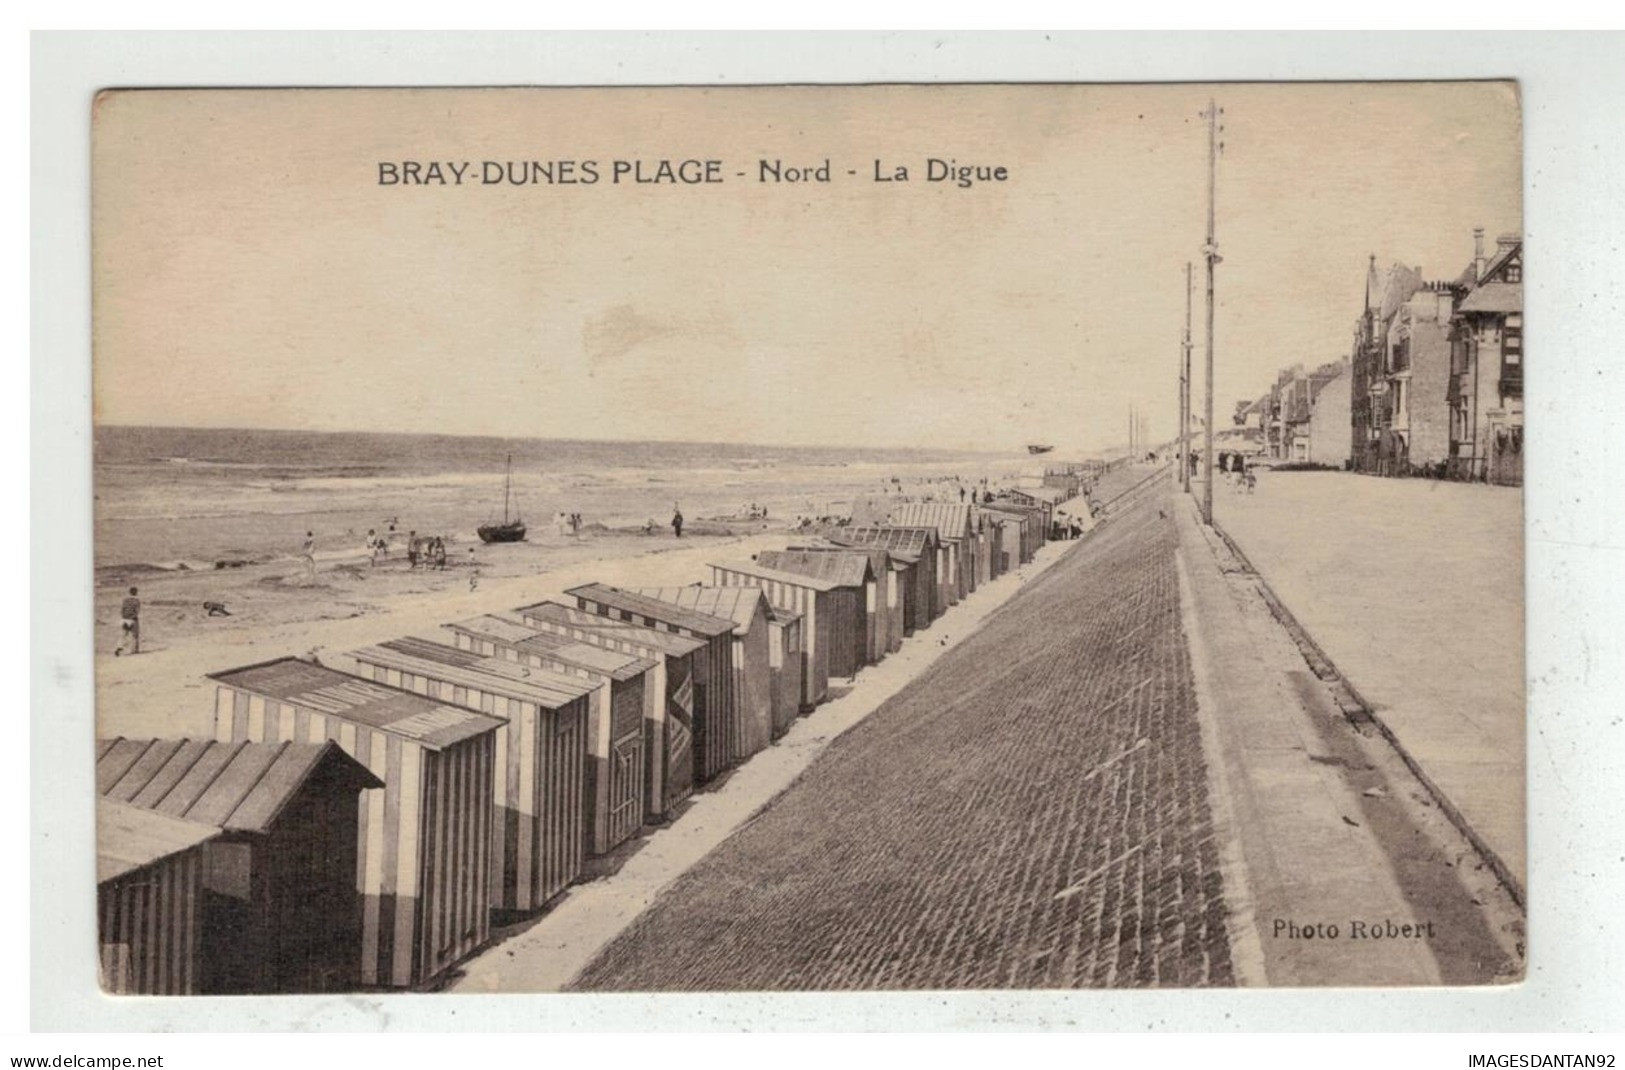 59 BRAY DUNES PLAGE NORD LA DIGUE EDIT ROBERT - Bray-Dunes